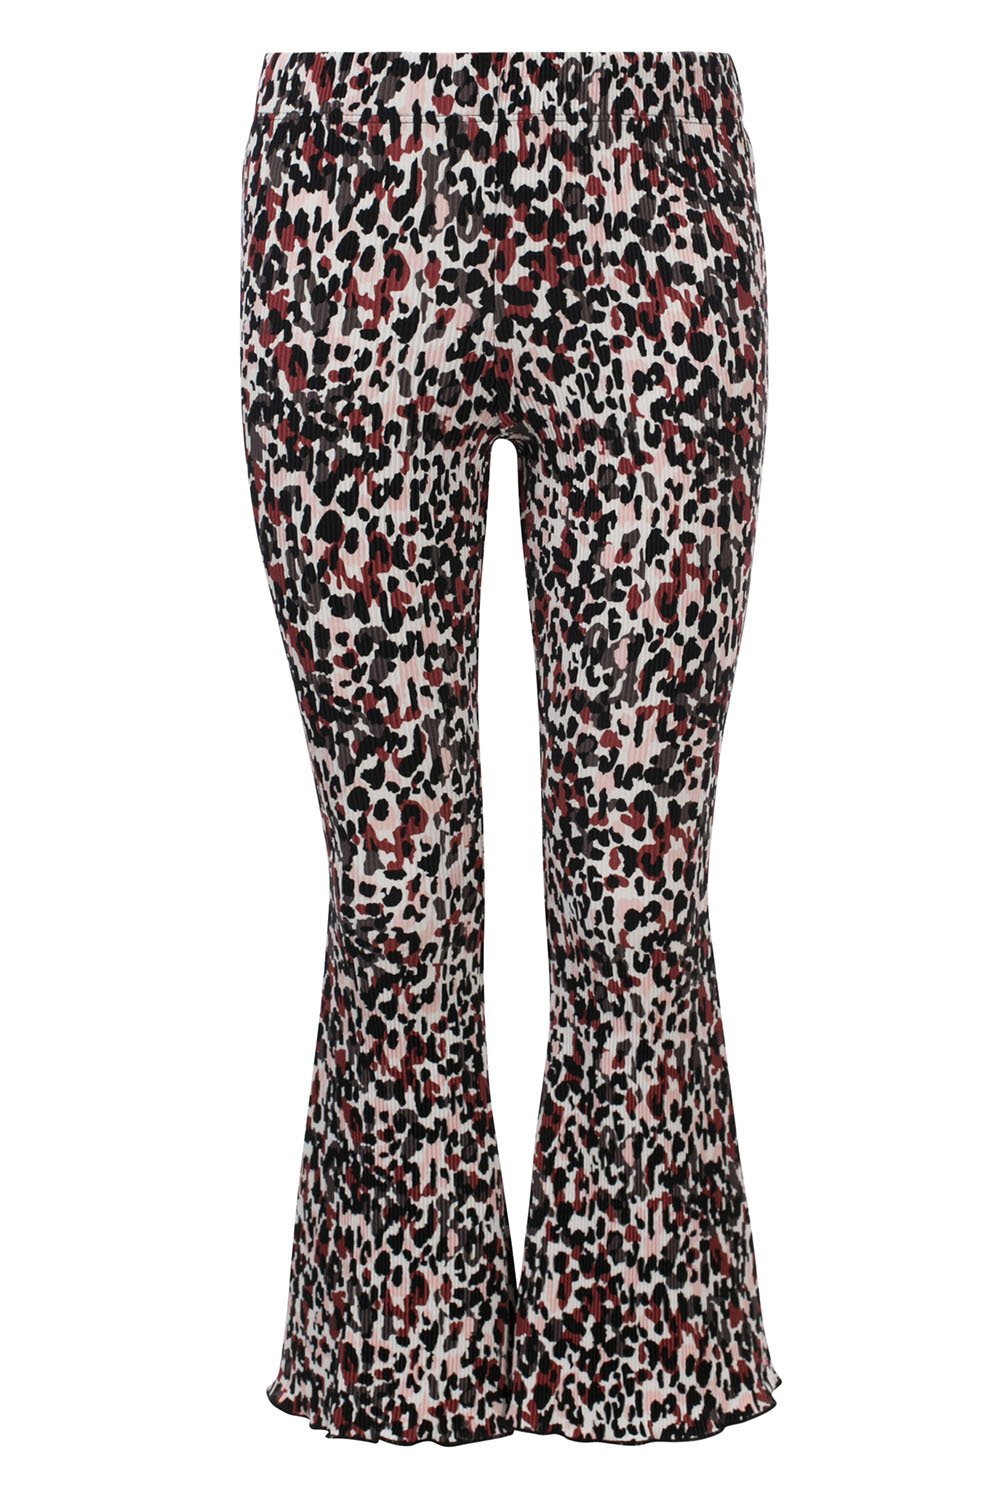 Meisjes 10Sixteen plisse flared pants van LOOXS 10sixteen in de kleur camo leopard in maat 176.